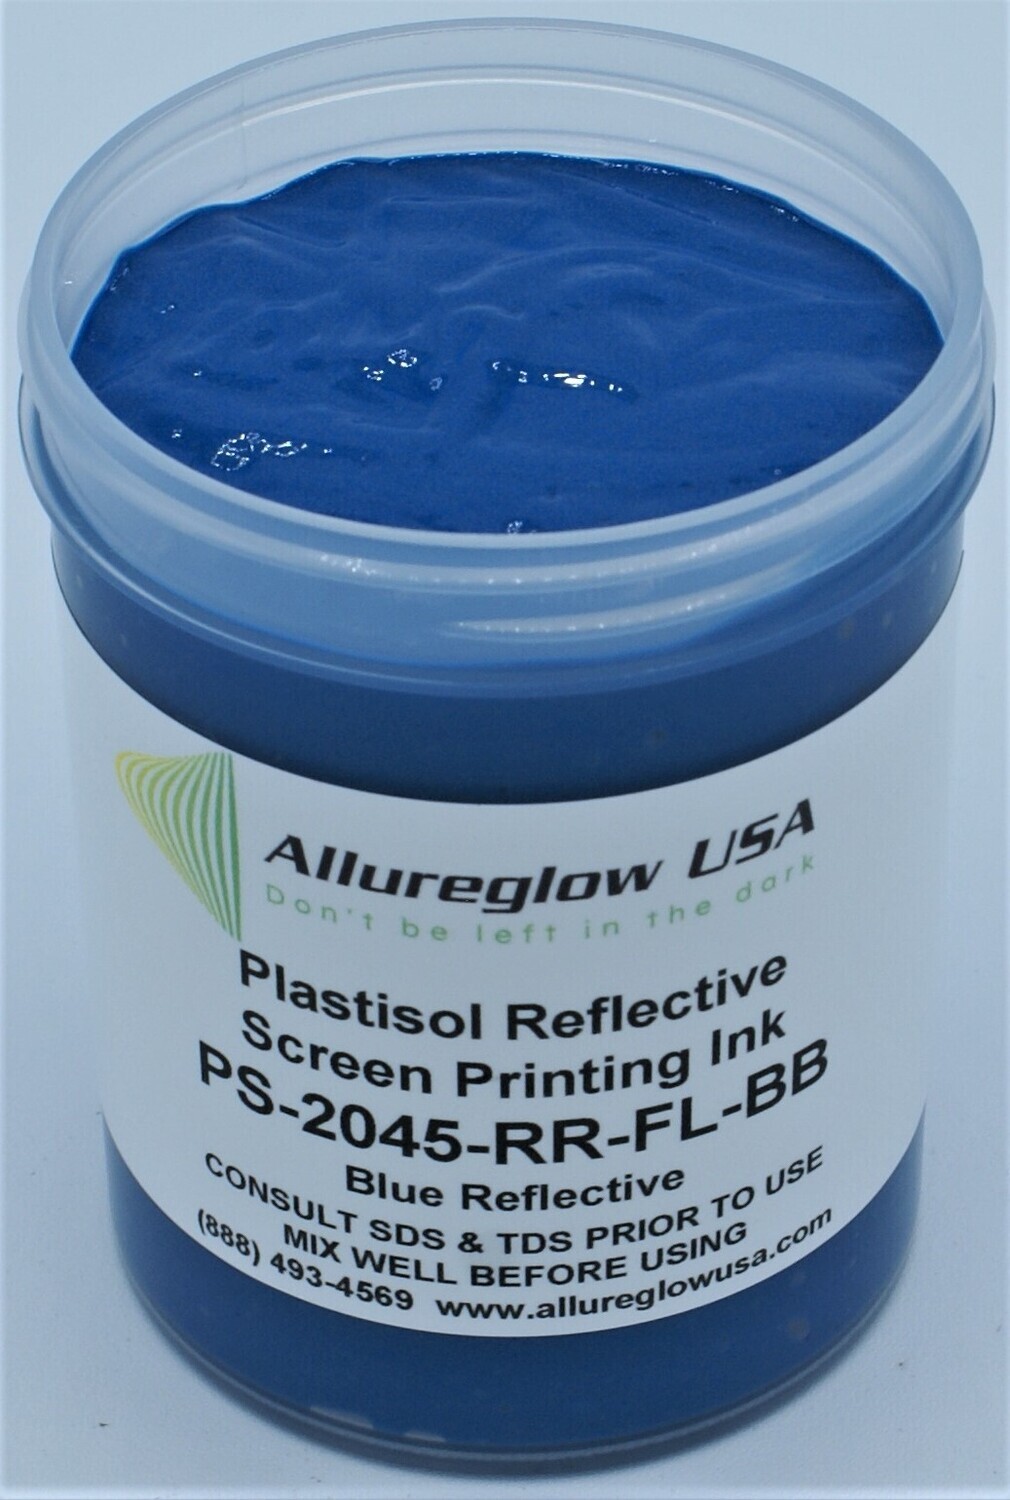 PS-2045-RR-FL-BB-QT  PLASTISOL FLUORESCENT BLUE REFLECTIVE INK QUART